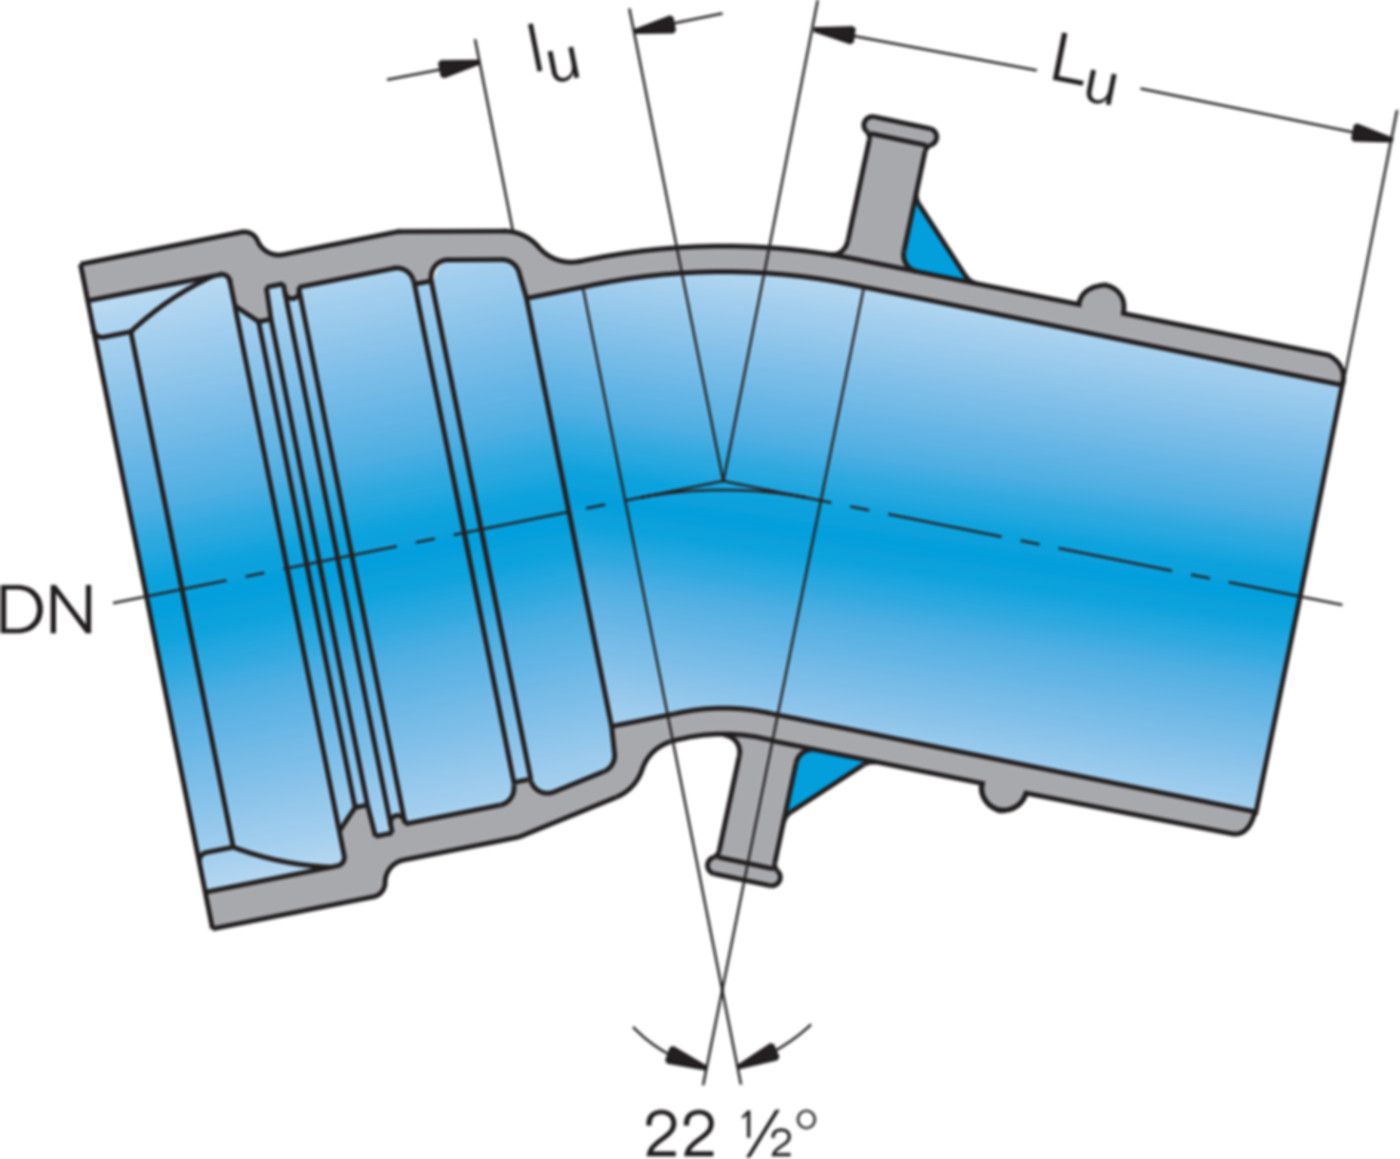 1-Muffe-Bogen MK 22° System BLS DN 150 - Frischhut Steckmuffenformstücke